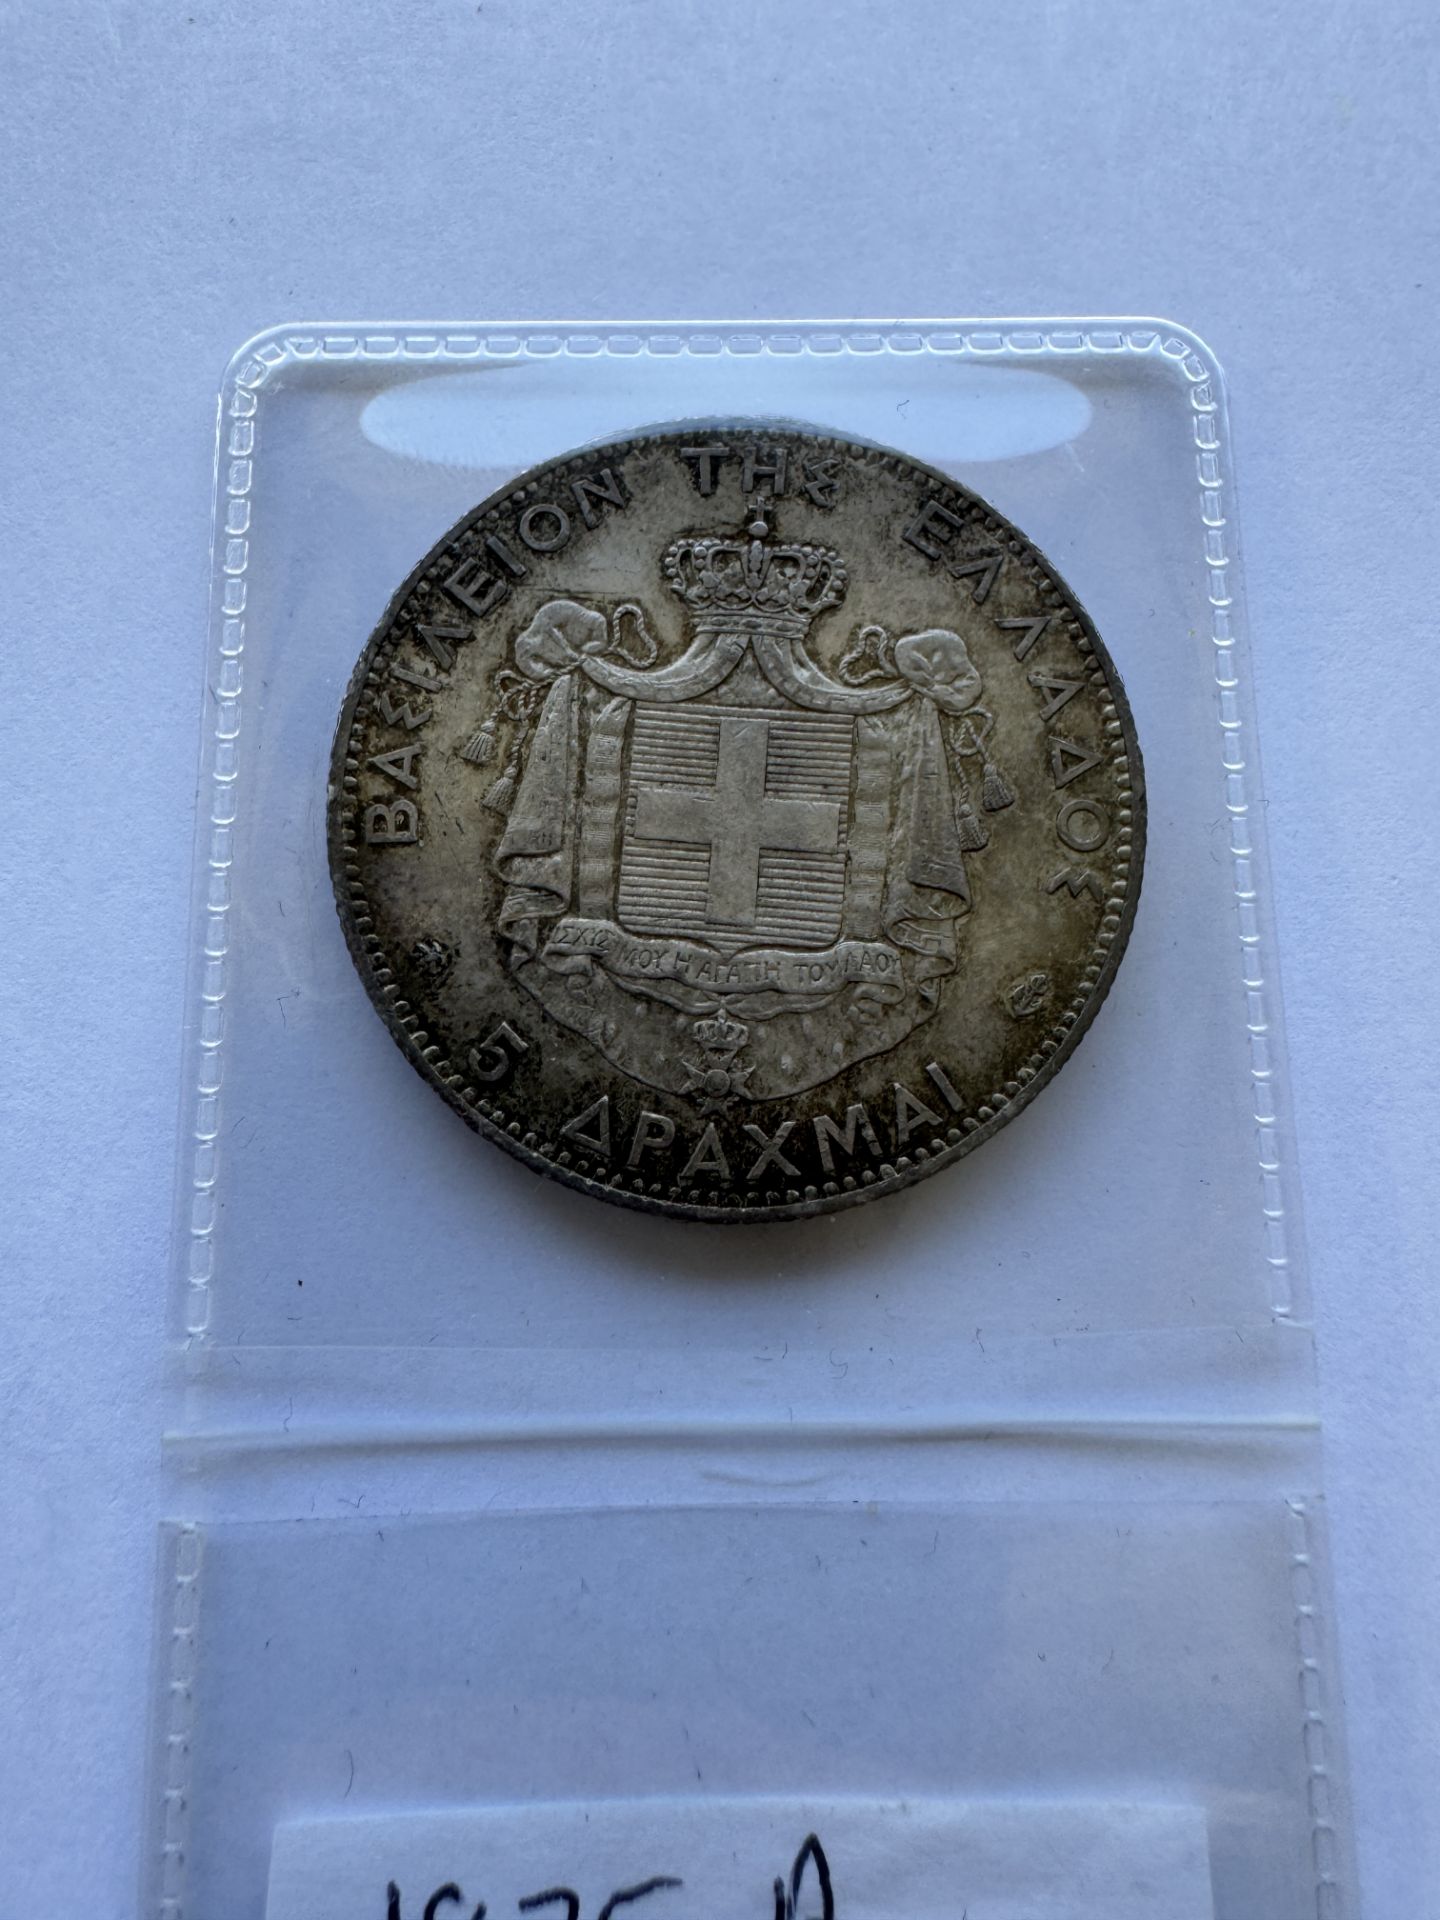 1875 A GRECIA 5 DRACHMAI COIN - GEORGE I